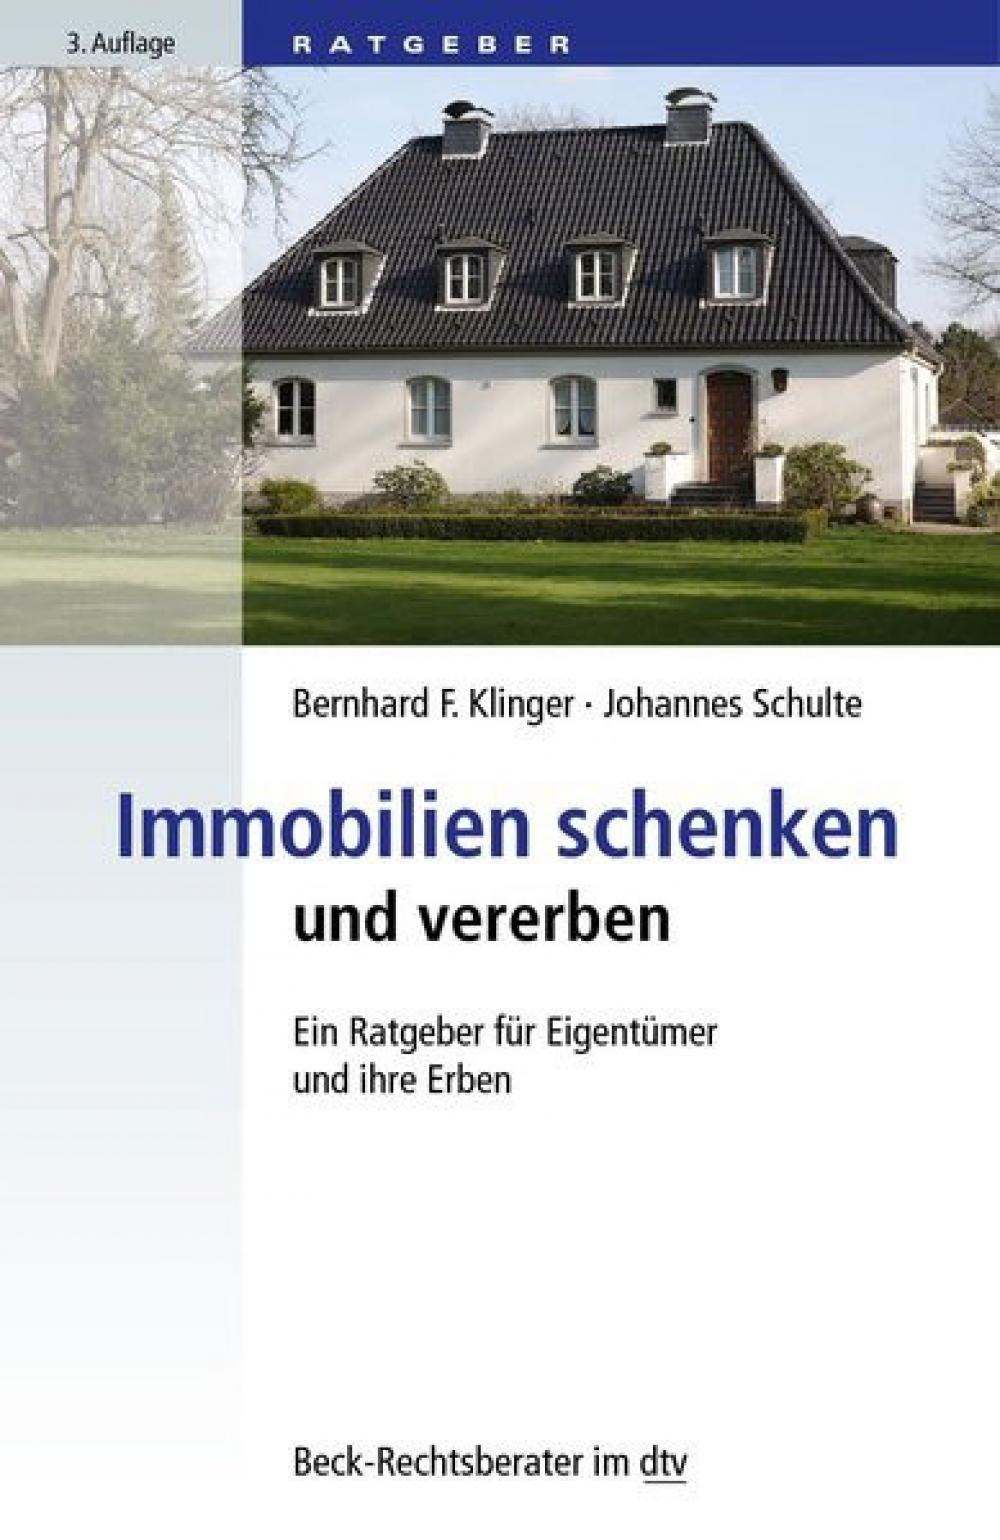 Immobilien schenken und vererben - Ein Ratgeber für Eigentümer und ihre Erben, 3. Auflage title=